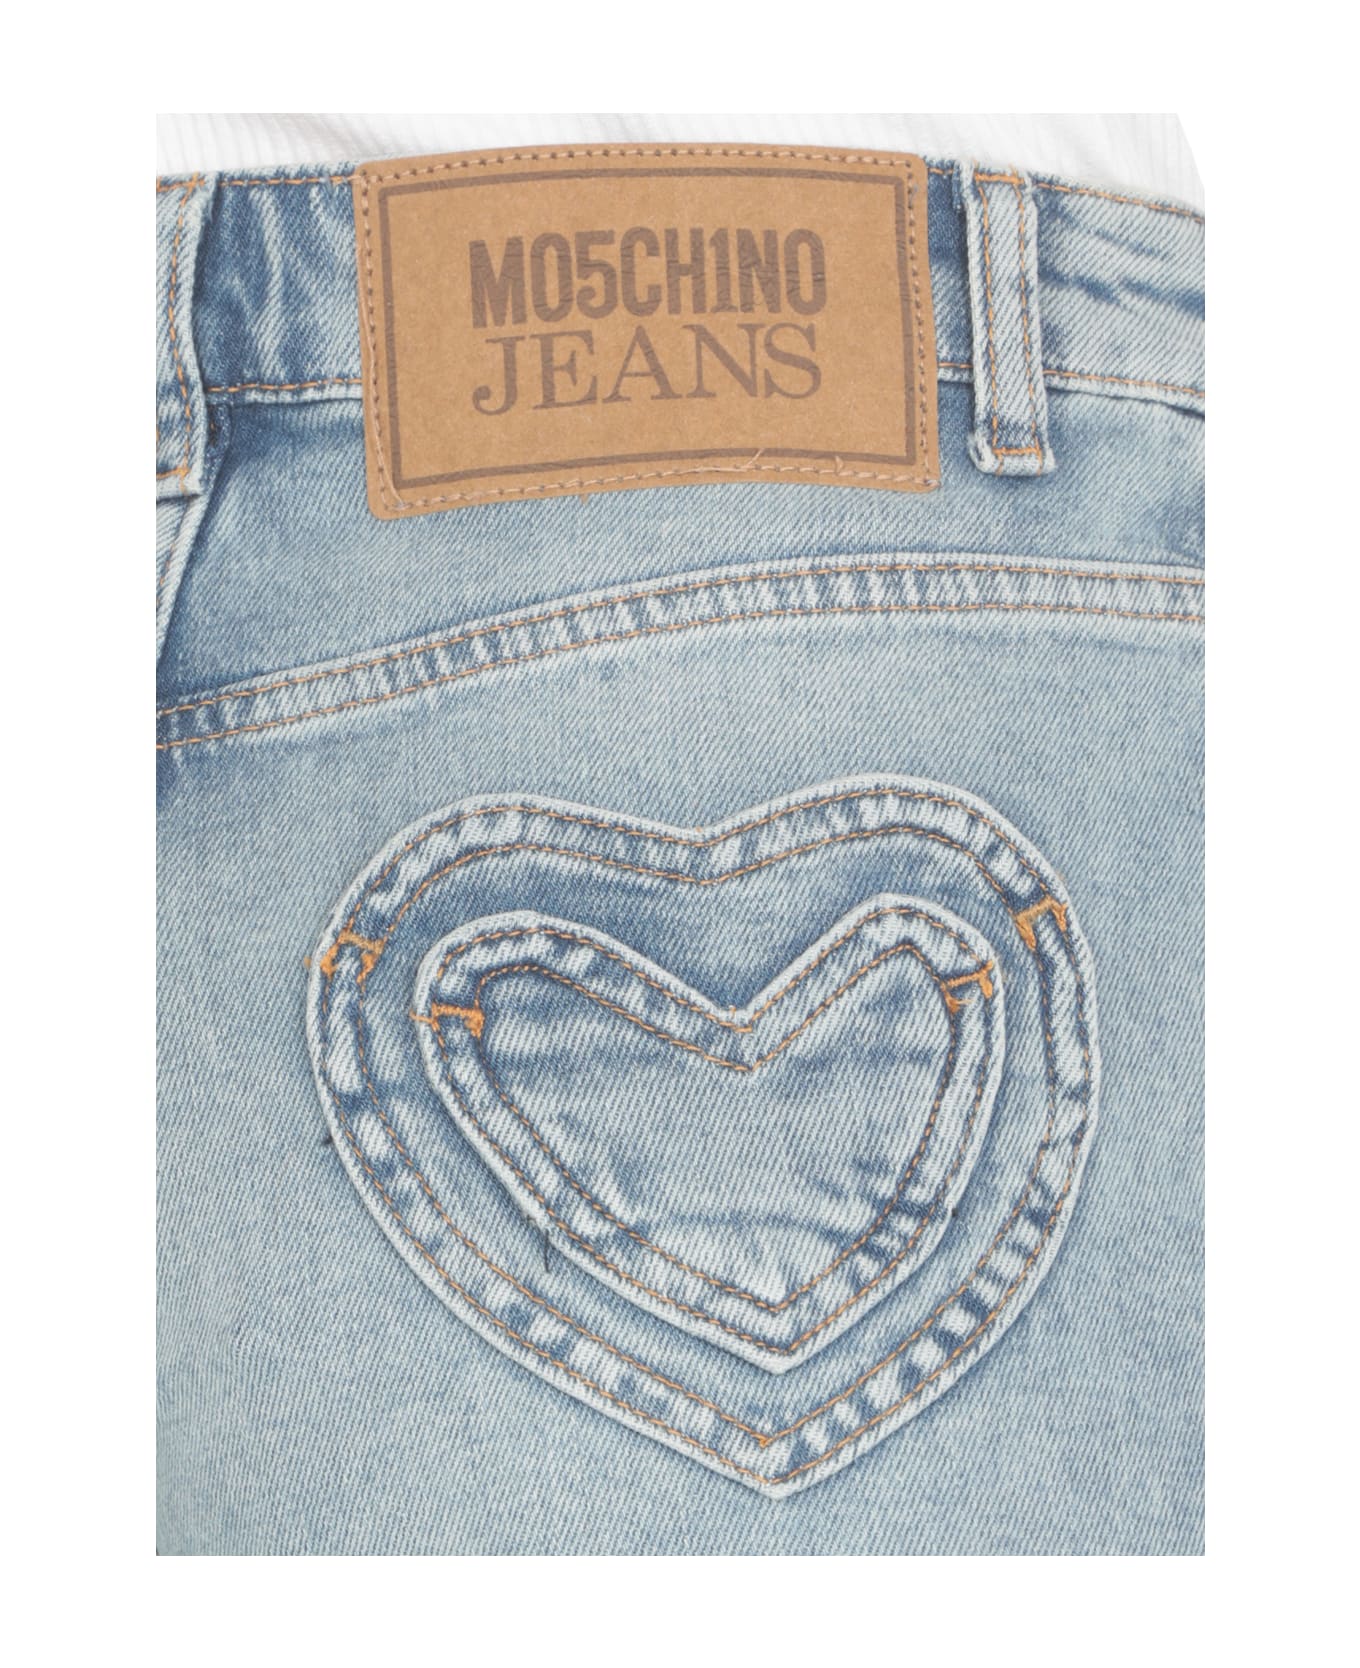 M05CH1N0 Jeans Cotton Shorts - Light Blue